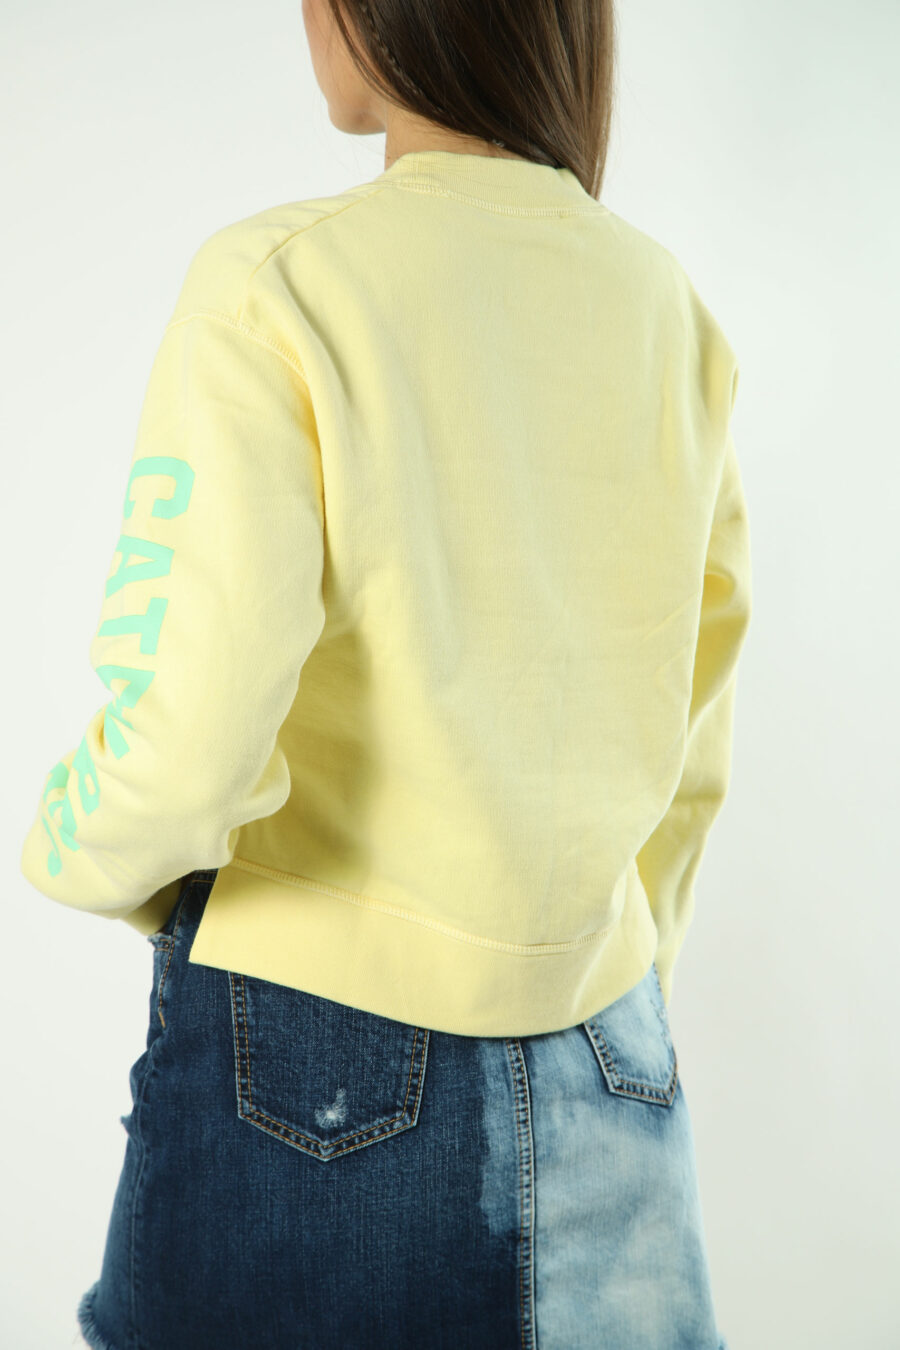 Sweatshirt amarela com maxilogo verde e texto nas mangas - 8052134554463 2